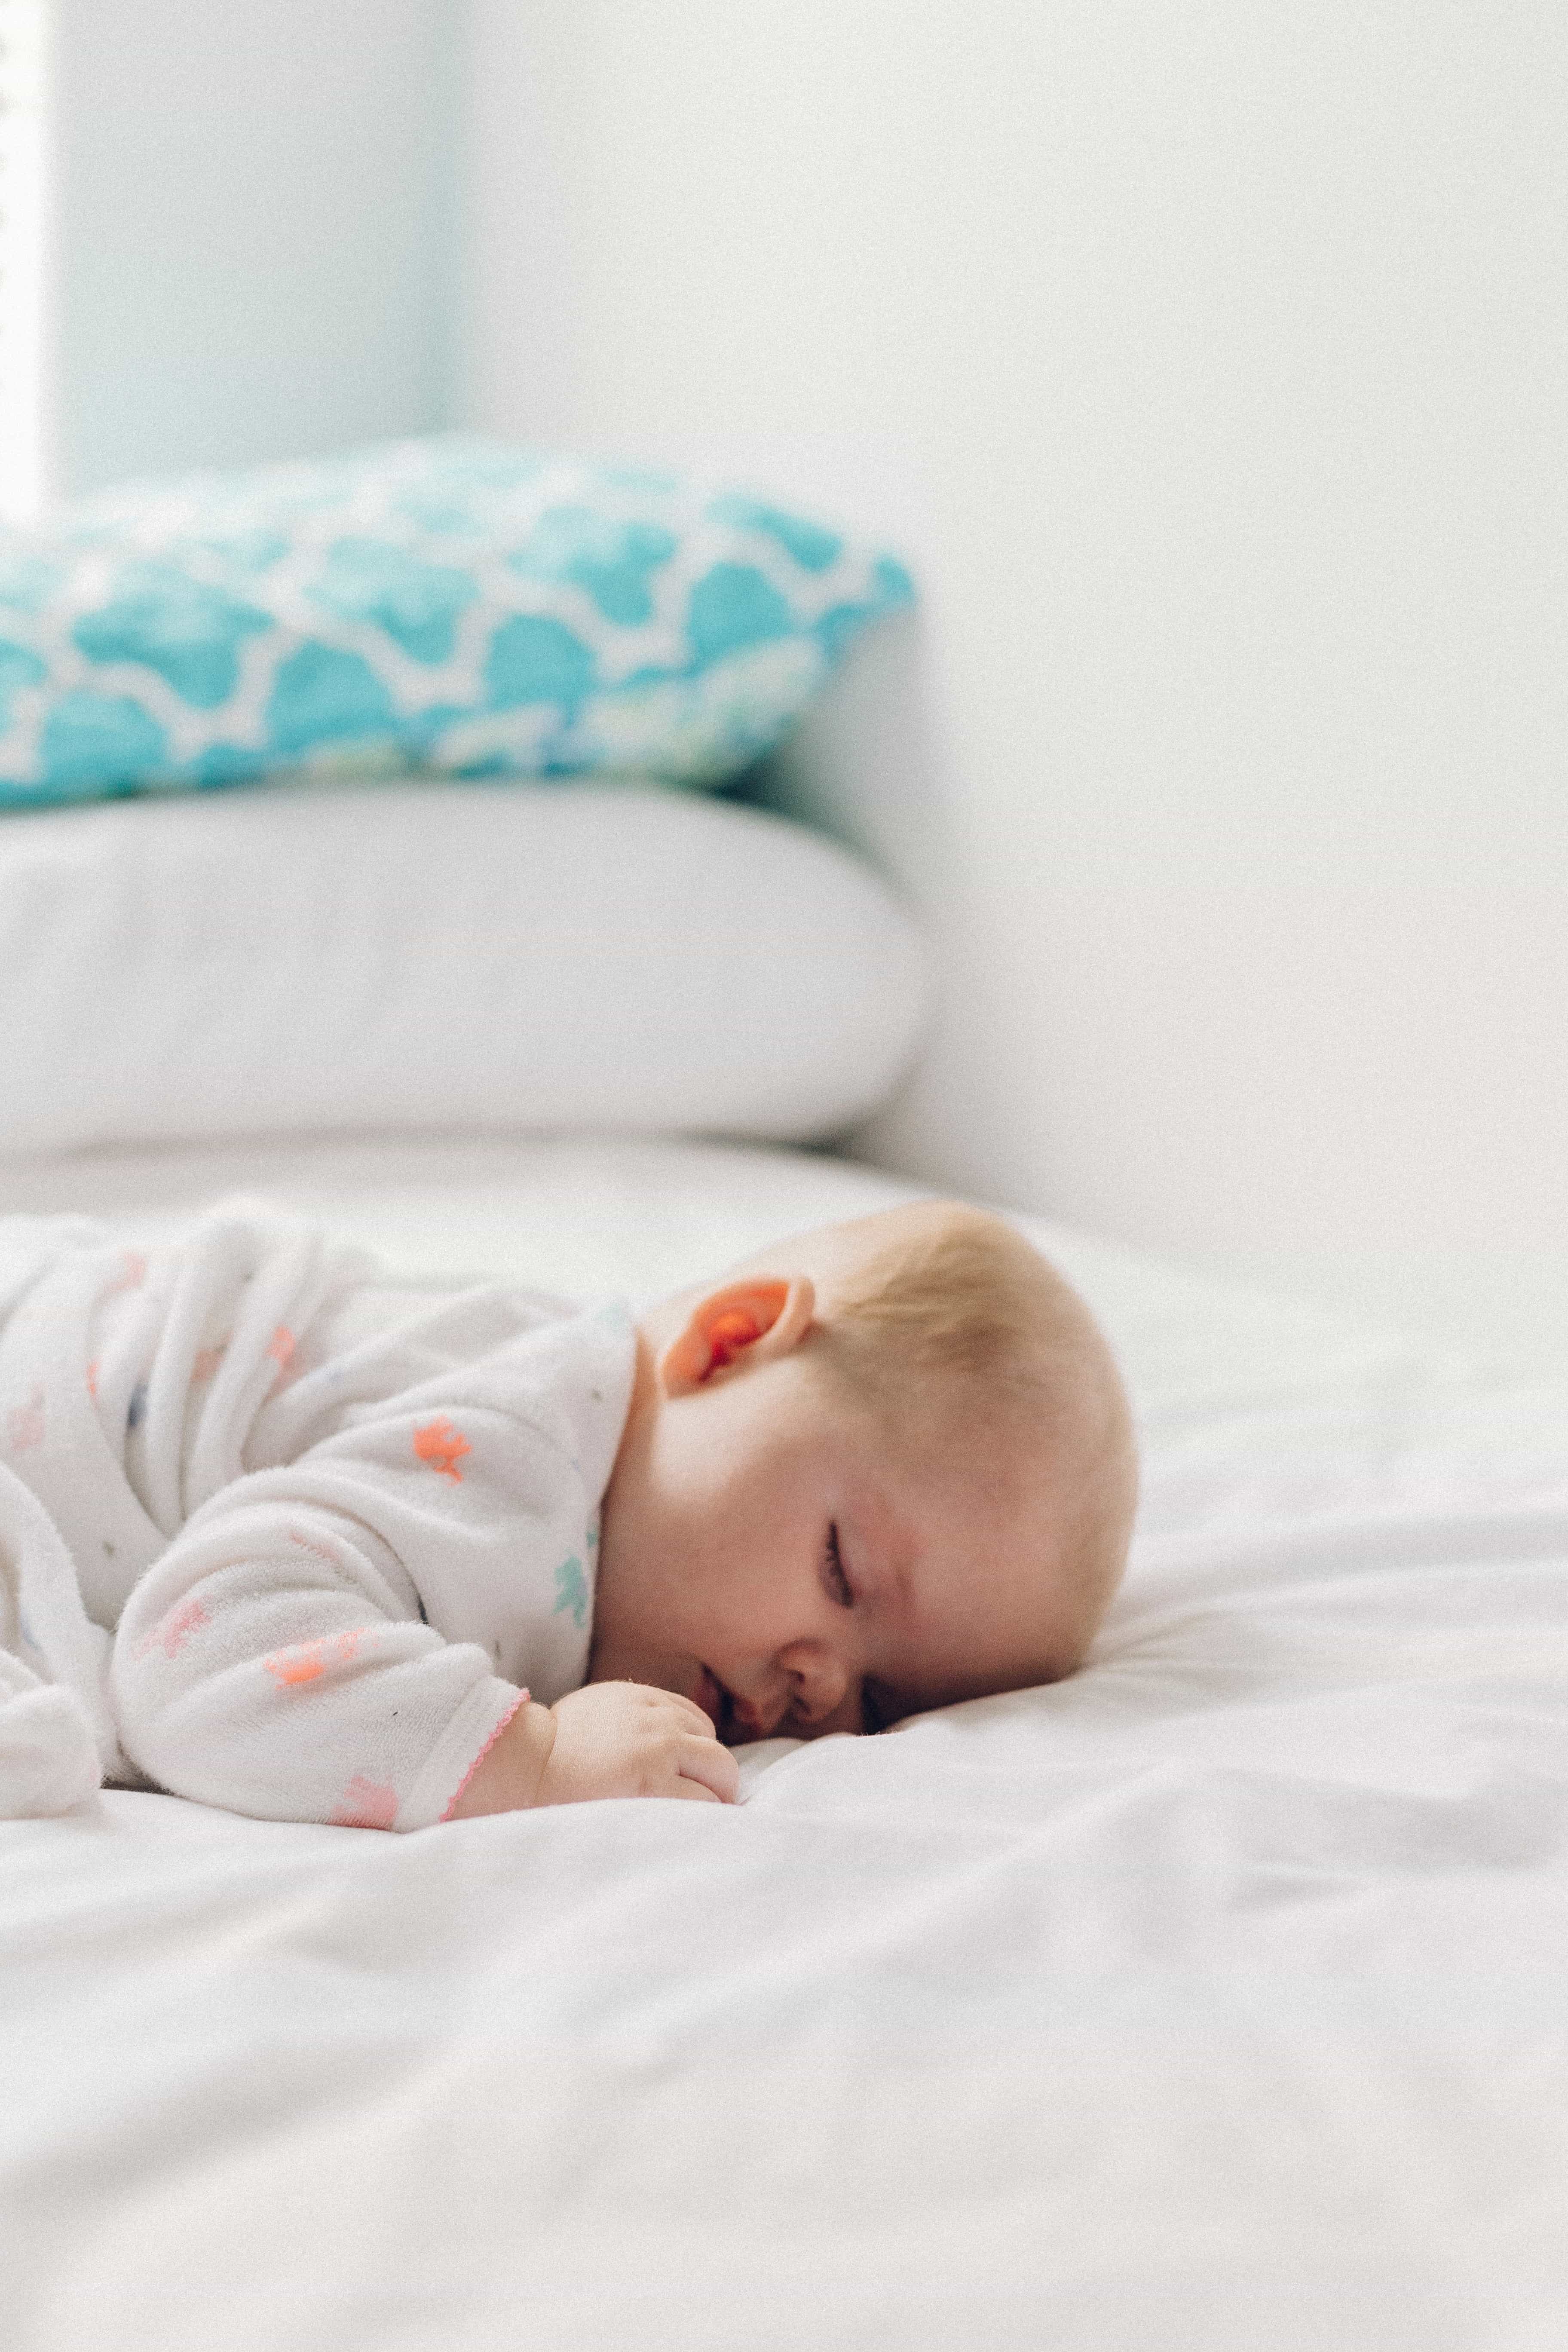 Razones por las que no debes poner una almohada a tu bebé